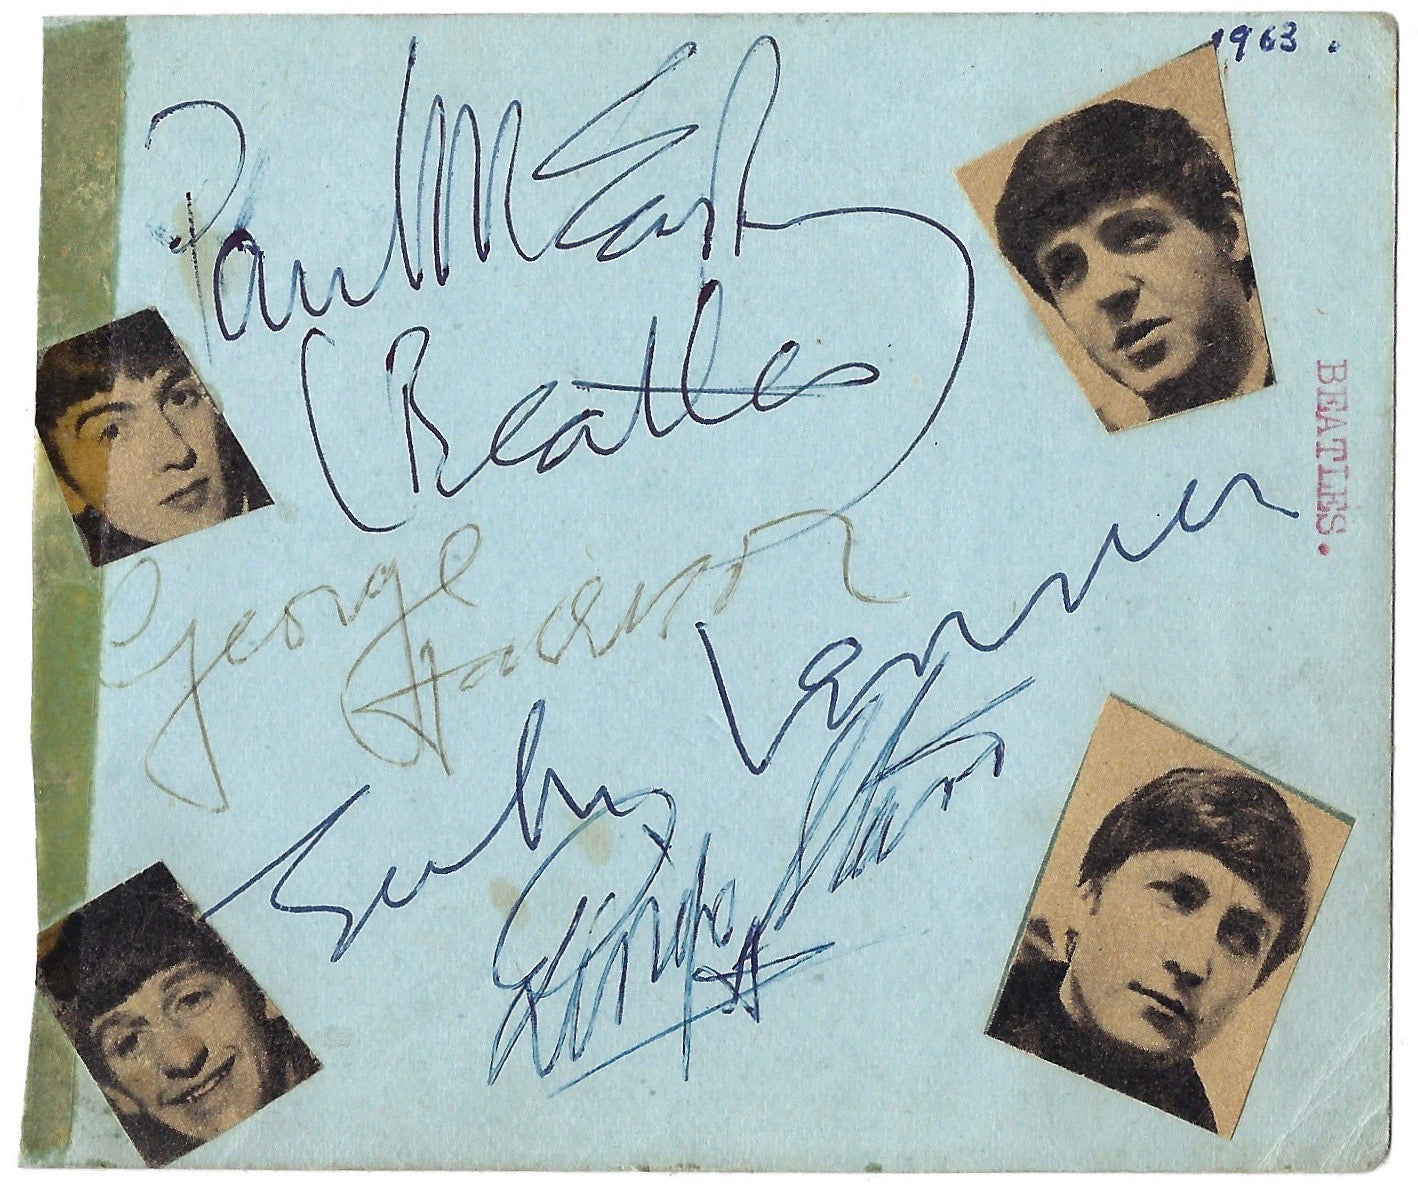 Beatles autographs